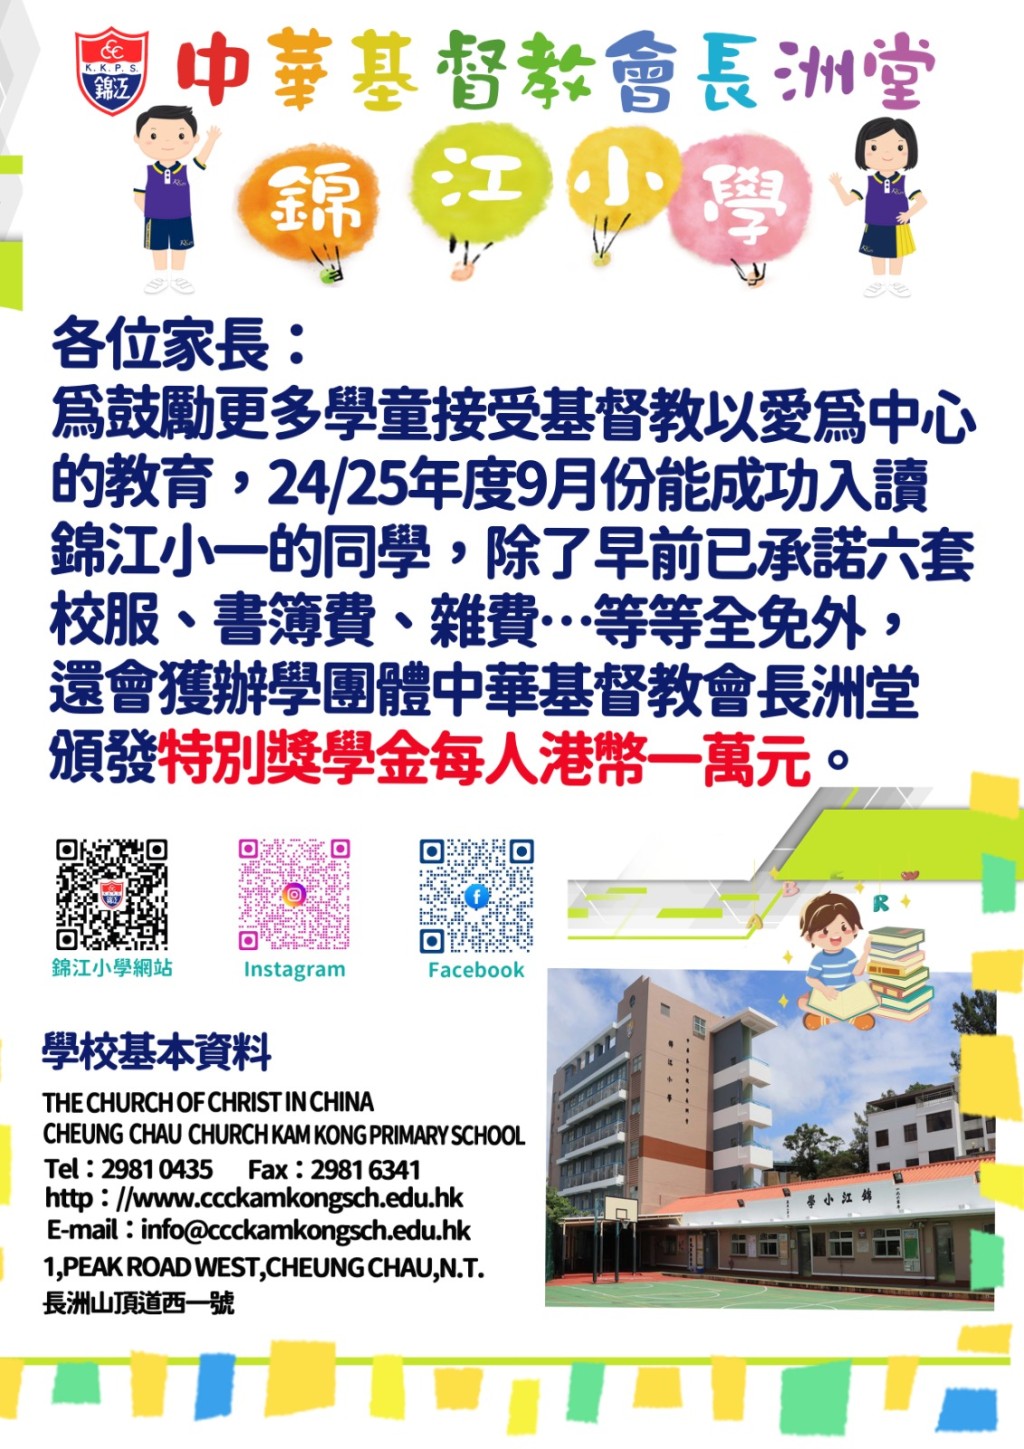 錦江小學澄清日前張貼「特別獎學金」通告內容，未交代詳情而引起誤解。 資料圖片